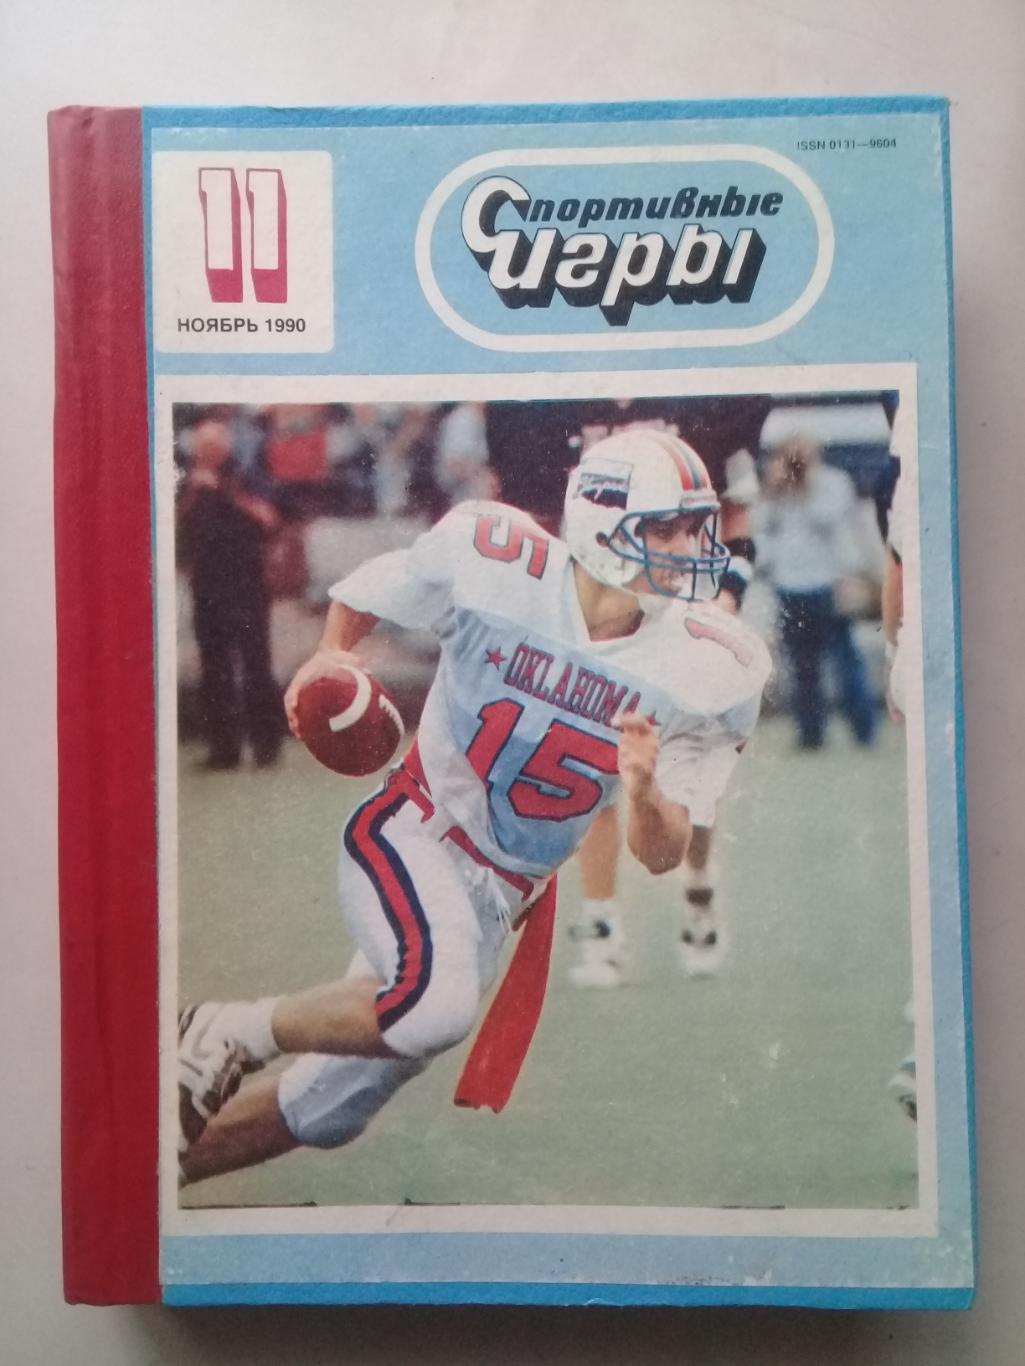 (Только для dk7586) Журнал Спортивные игры 1990 год. Годовой комплект.